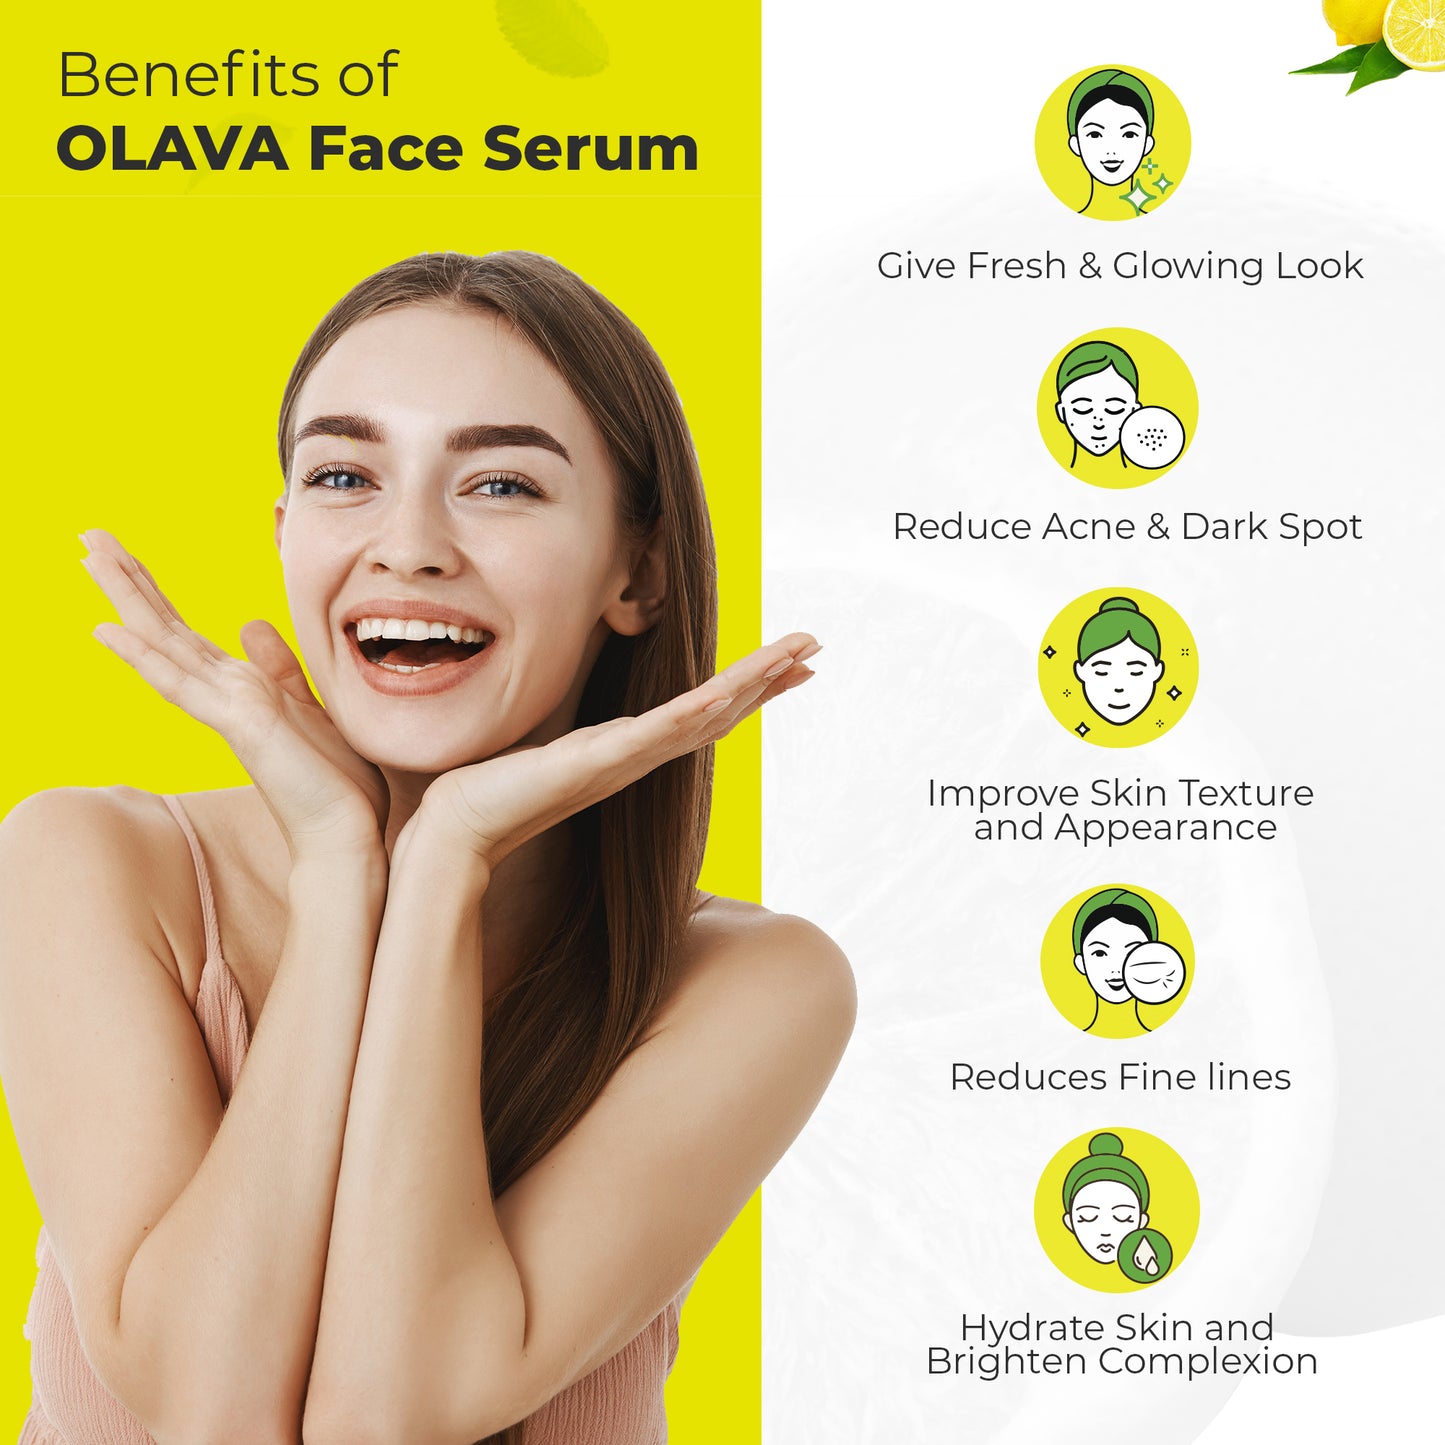 Olava Naturals Vitamin C Serum - 20% Vitamin C Face Serum - Skin Brightening Vit C Serum for Men & Women - Non Irritating - 30ml